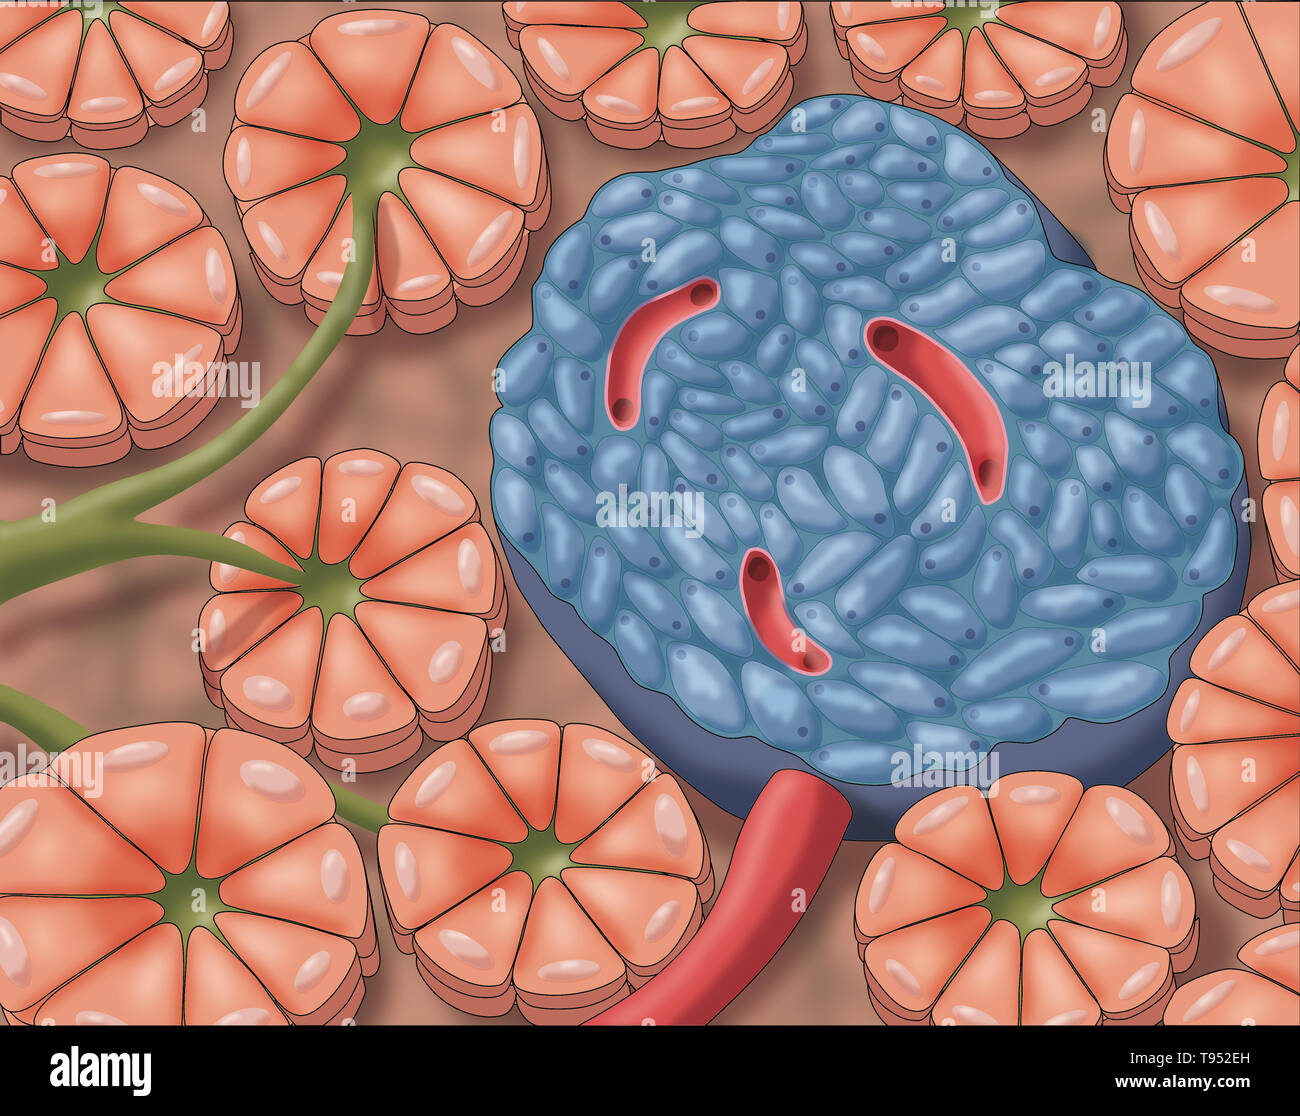 Illustrazione di isolotti pancreatici, chiamato anche gli isolotti di Langerhans, piccoli cluster di celle sparsi per tutto il pancreas. Foto Stock